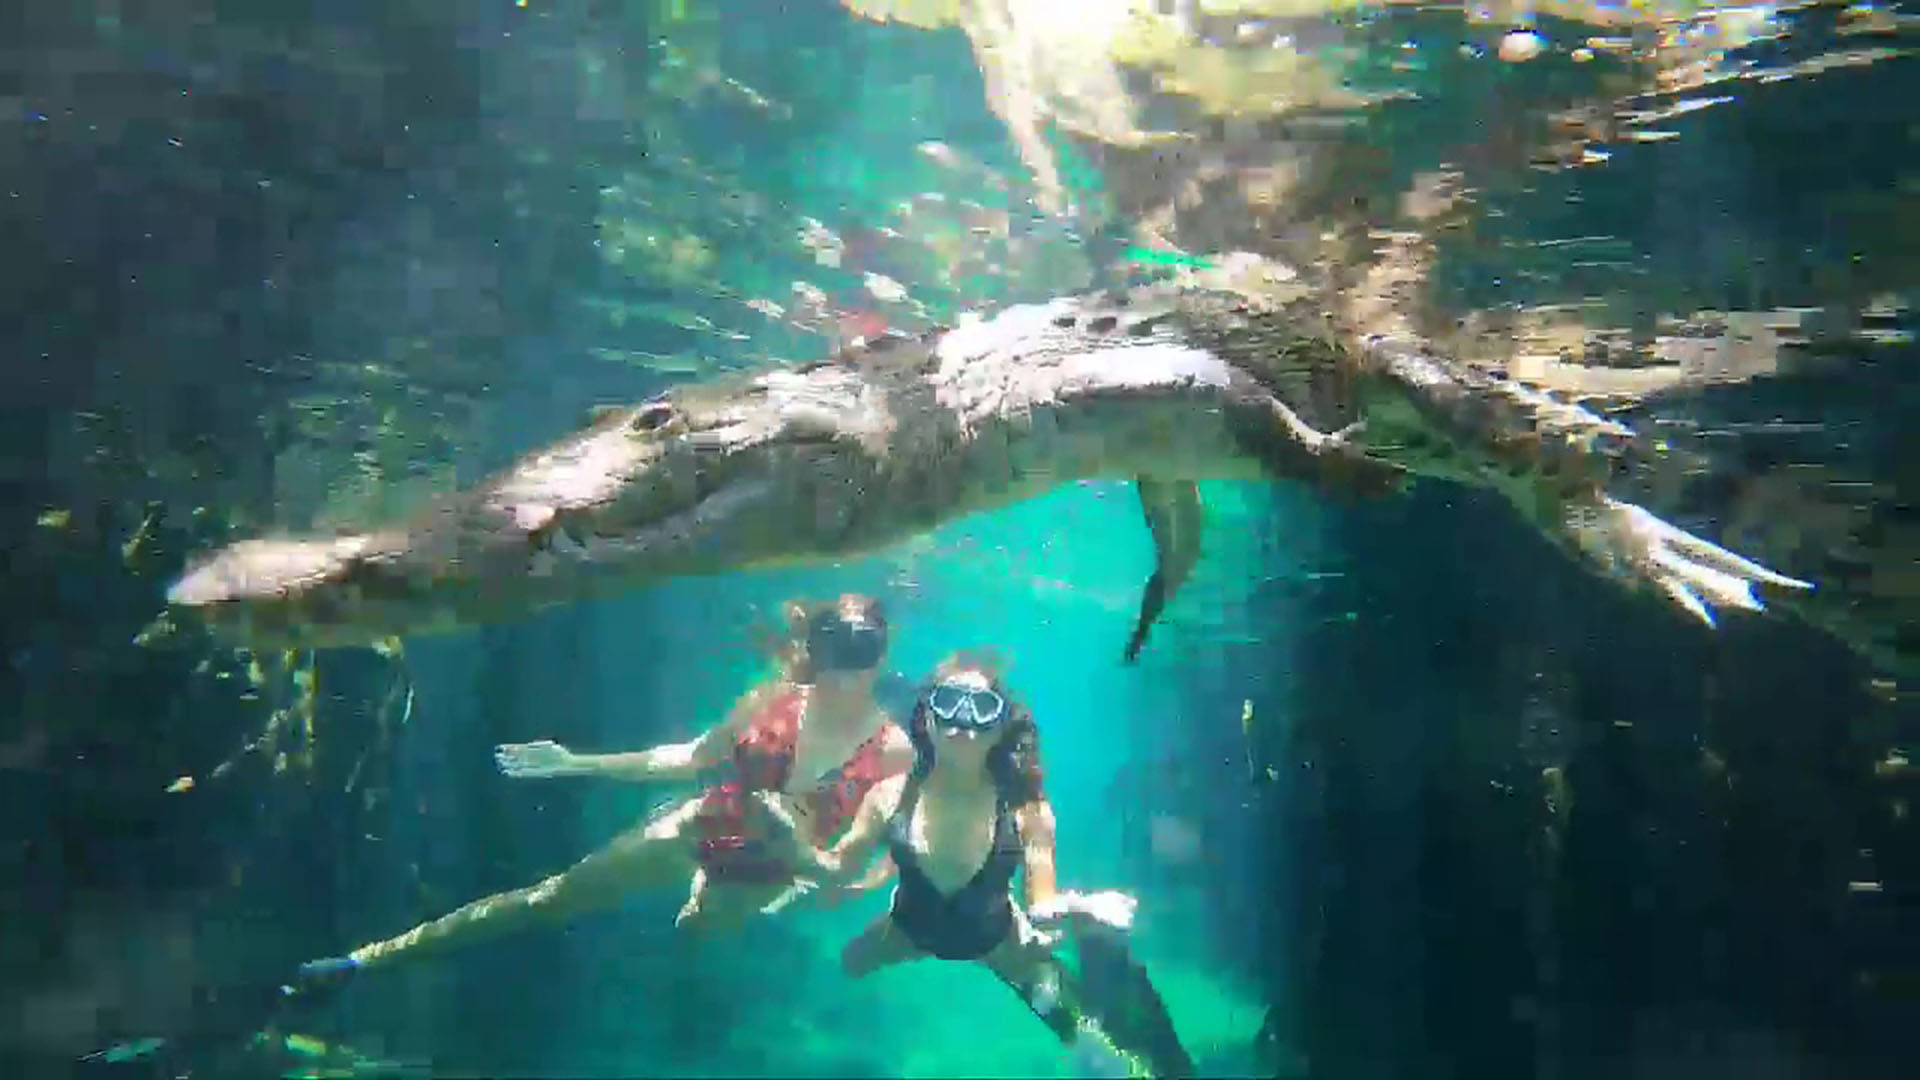 La verdad detrás del video viral de la pareja que nadó con un cocodrilo en  un cenote de Tulum - Infobae